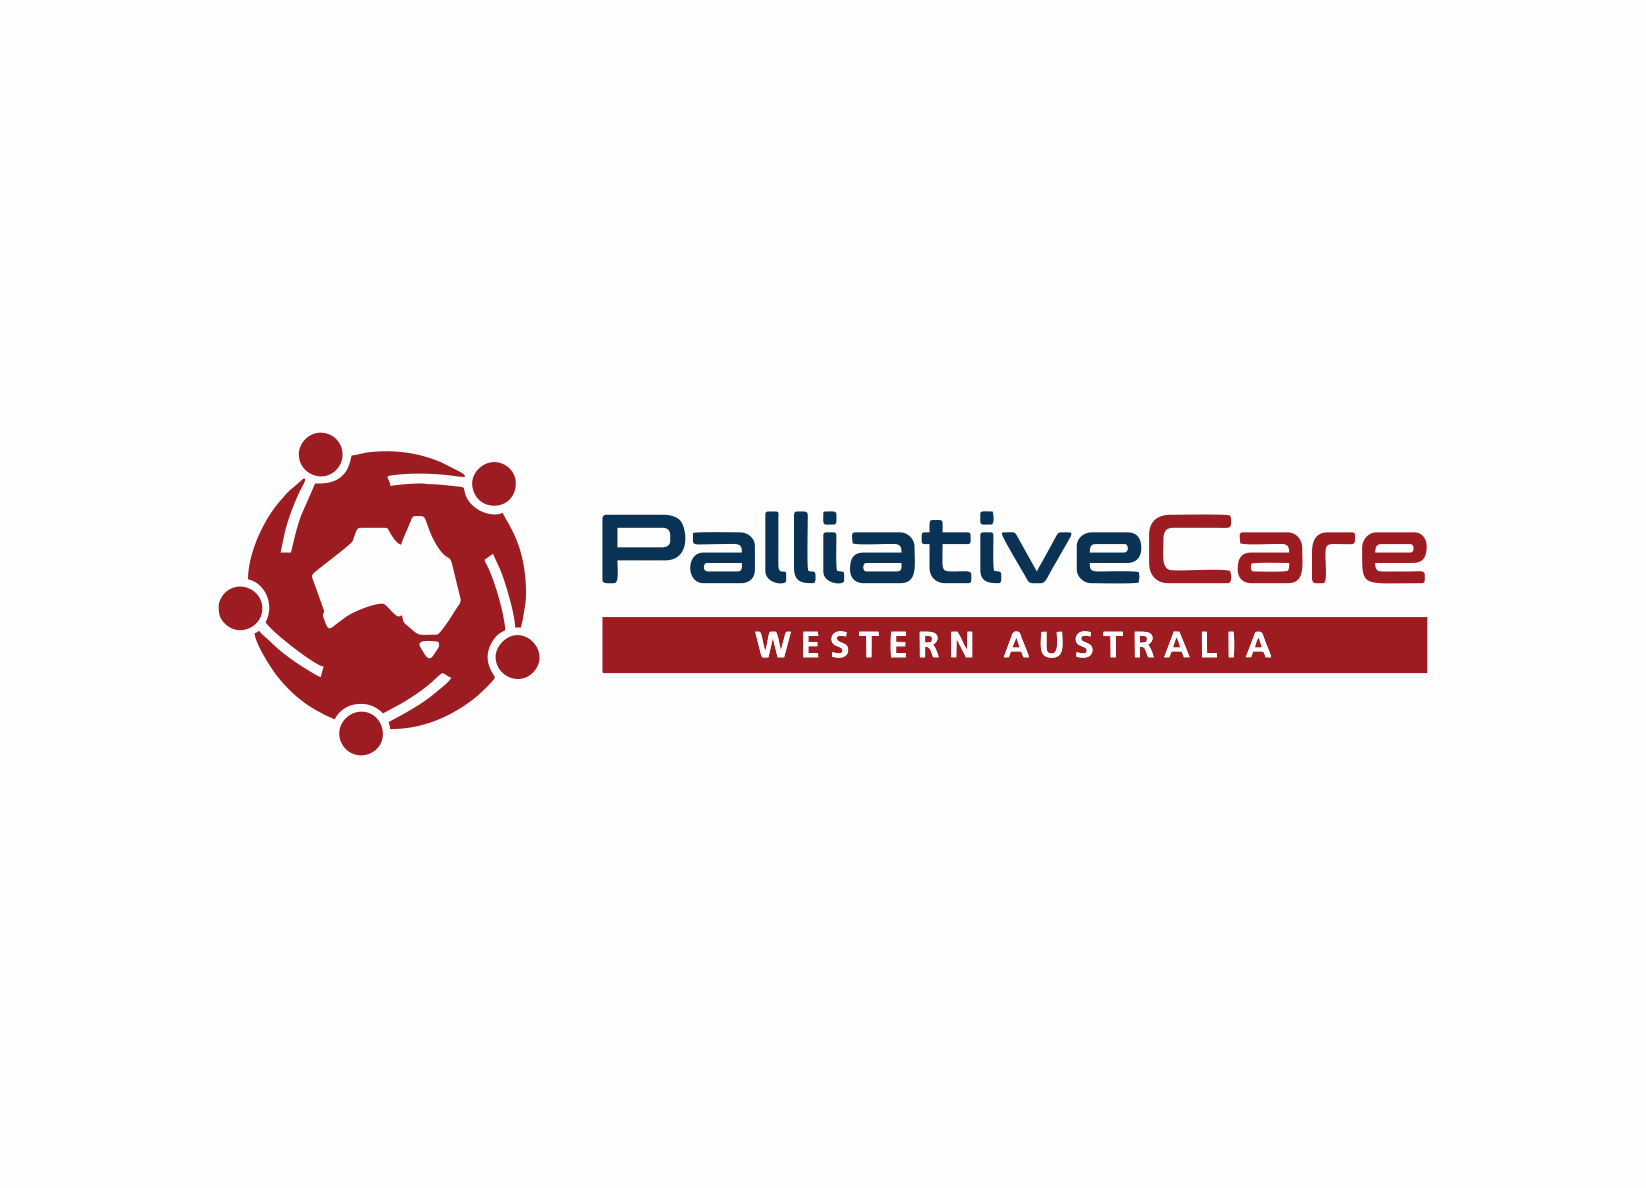 PALLIATIVE CARE